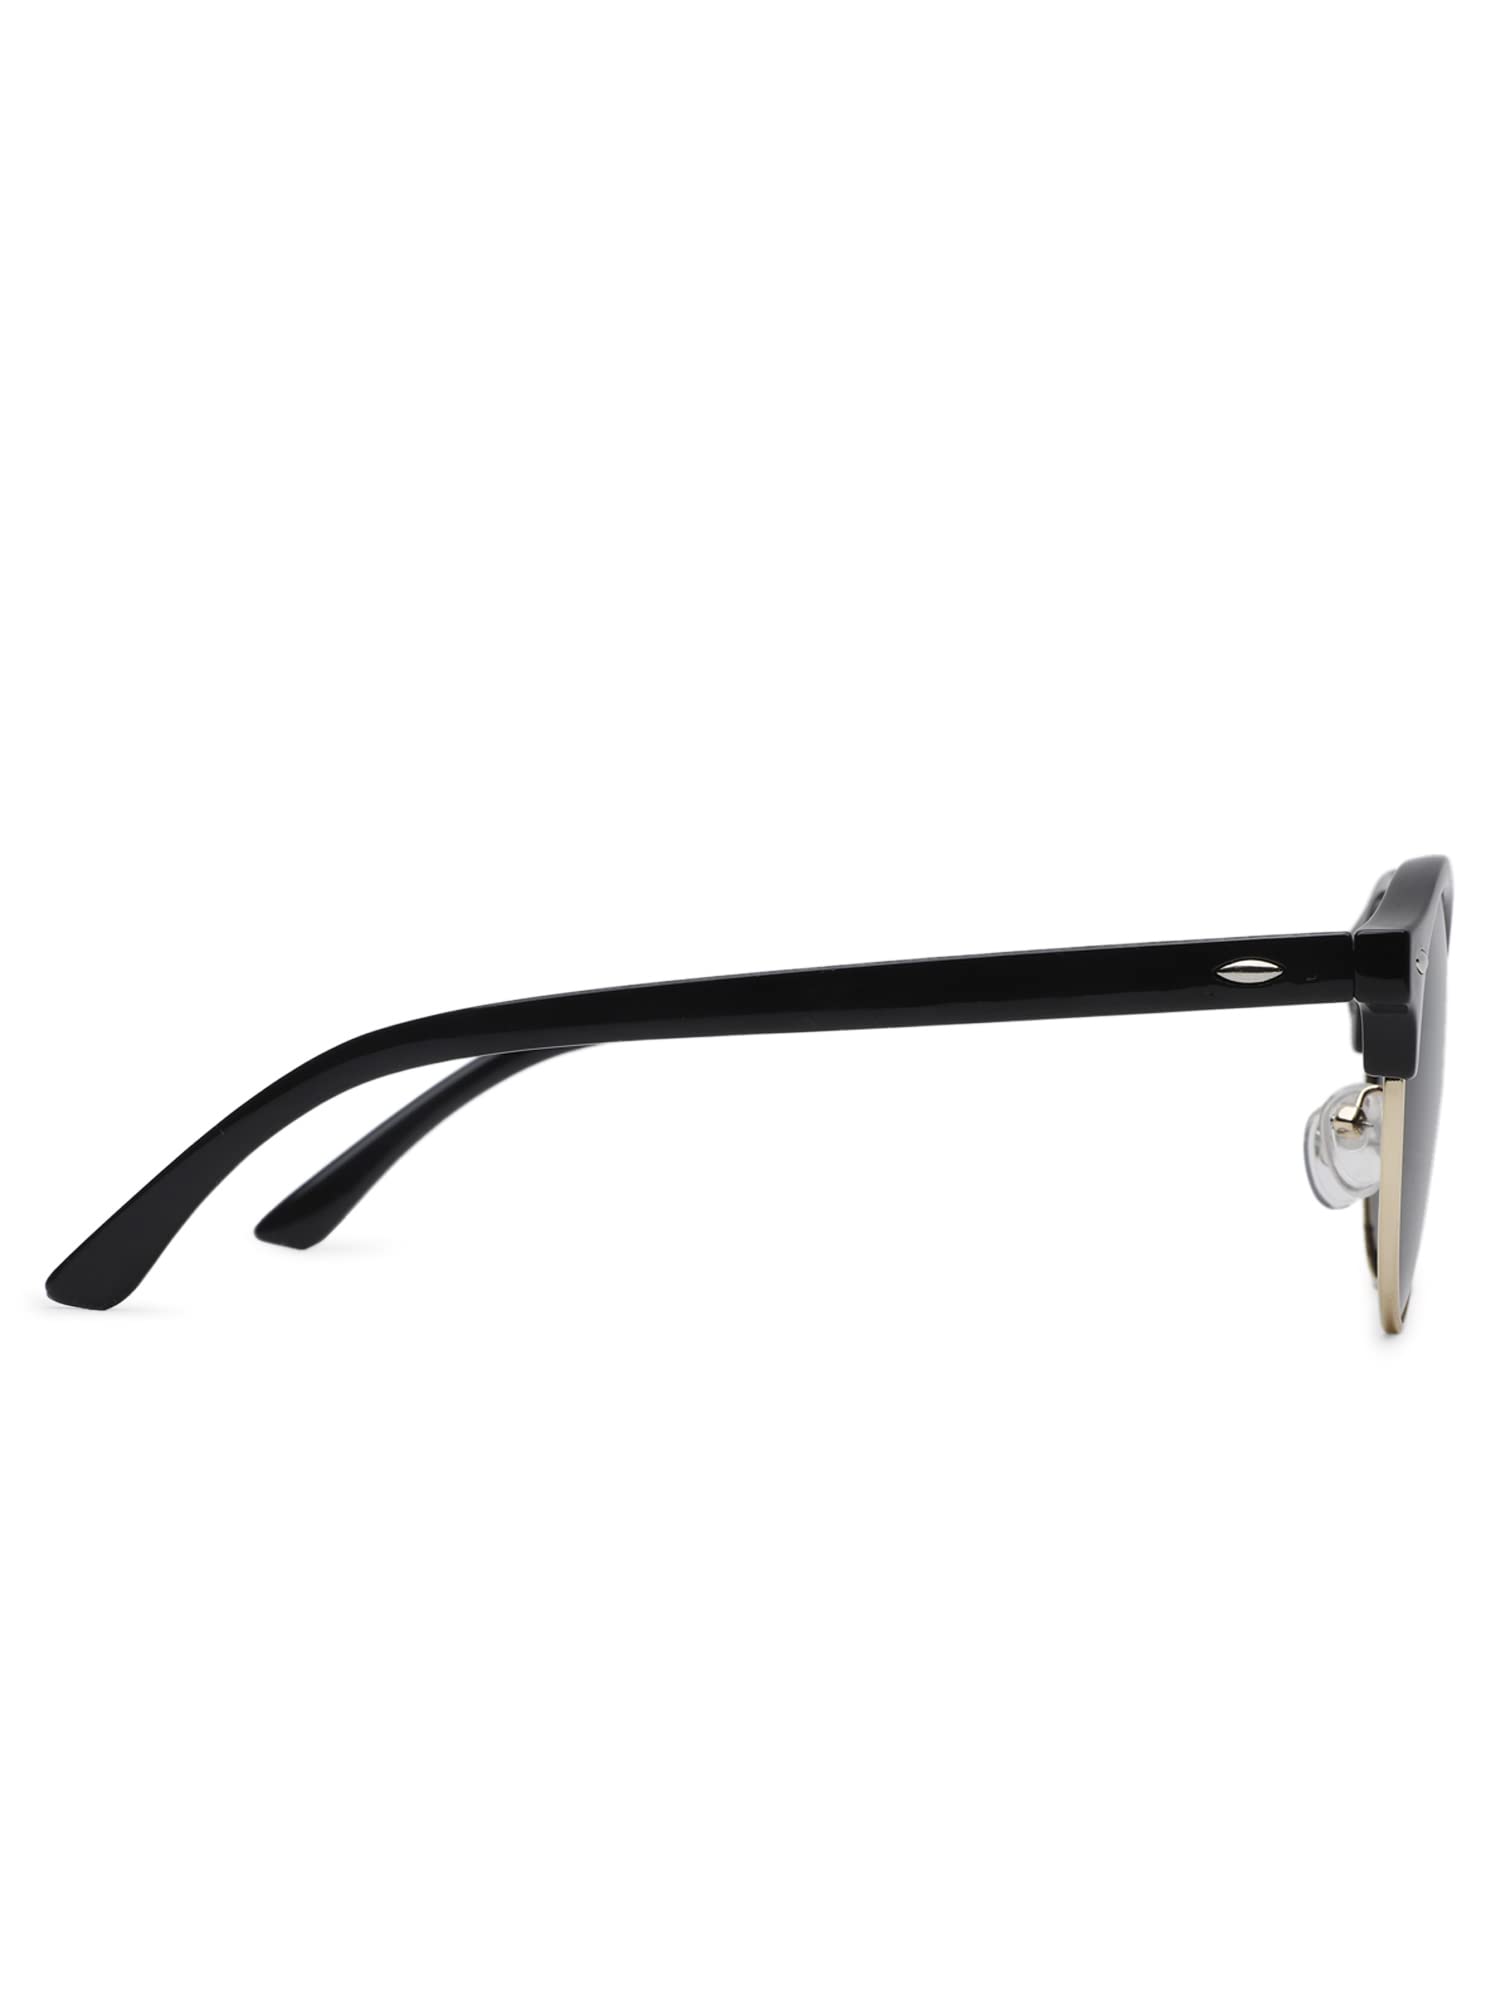 Intellilens Round Polarized & UV Protected Sunglasses For Men & Women | Goggles for Men & Women (Black) (55-22-140)